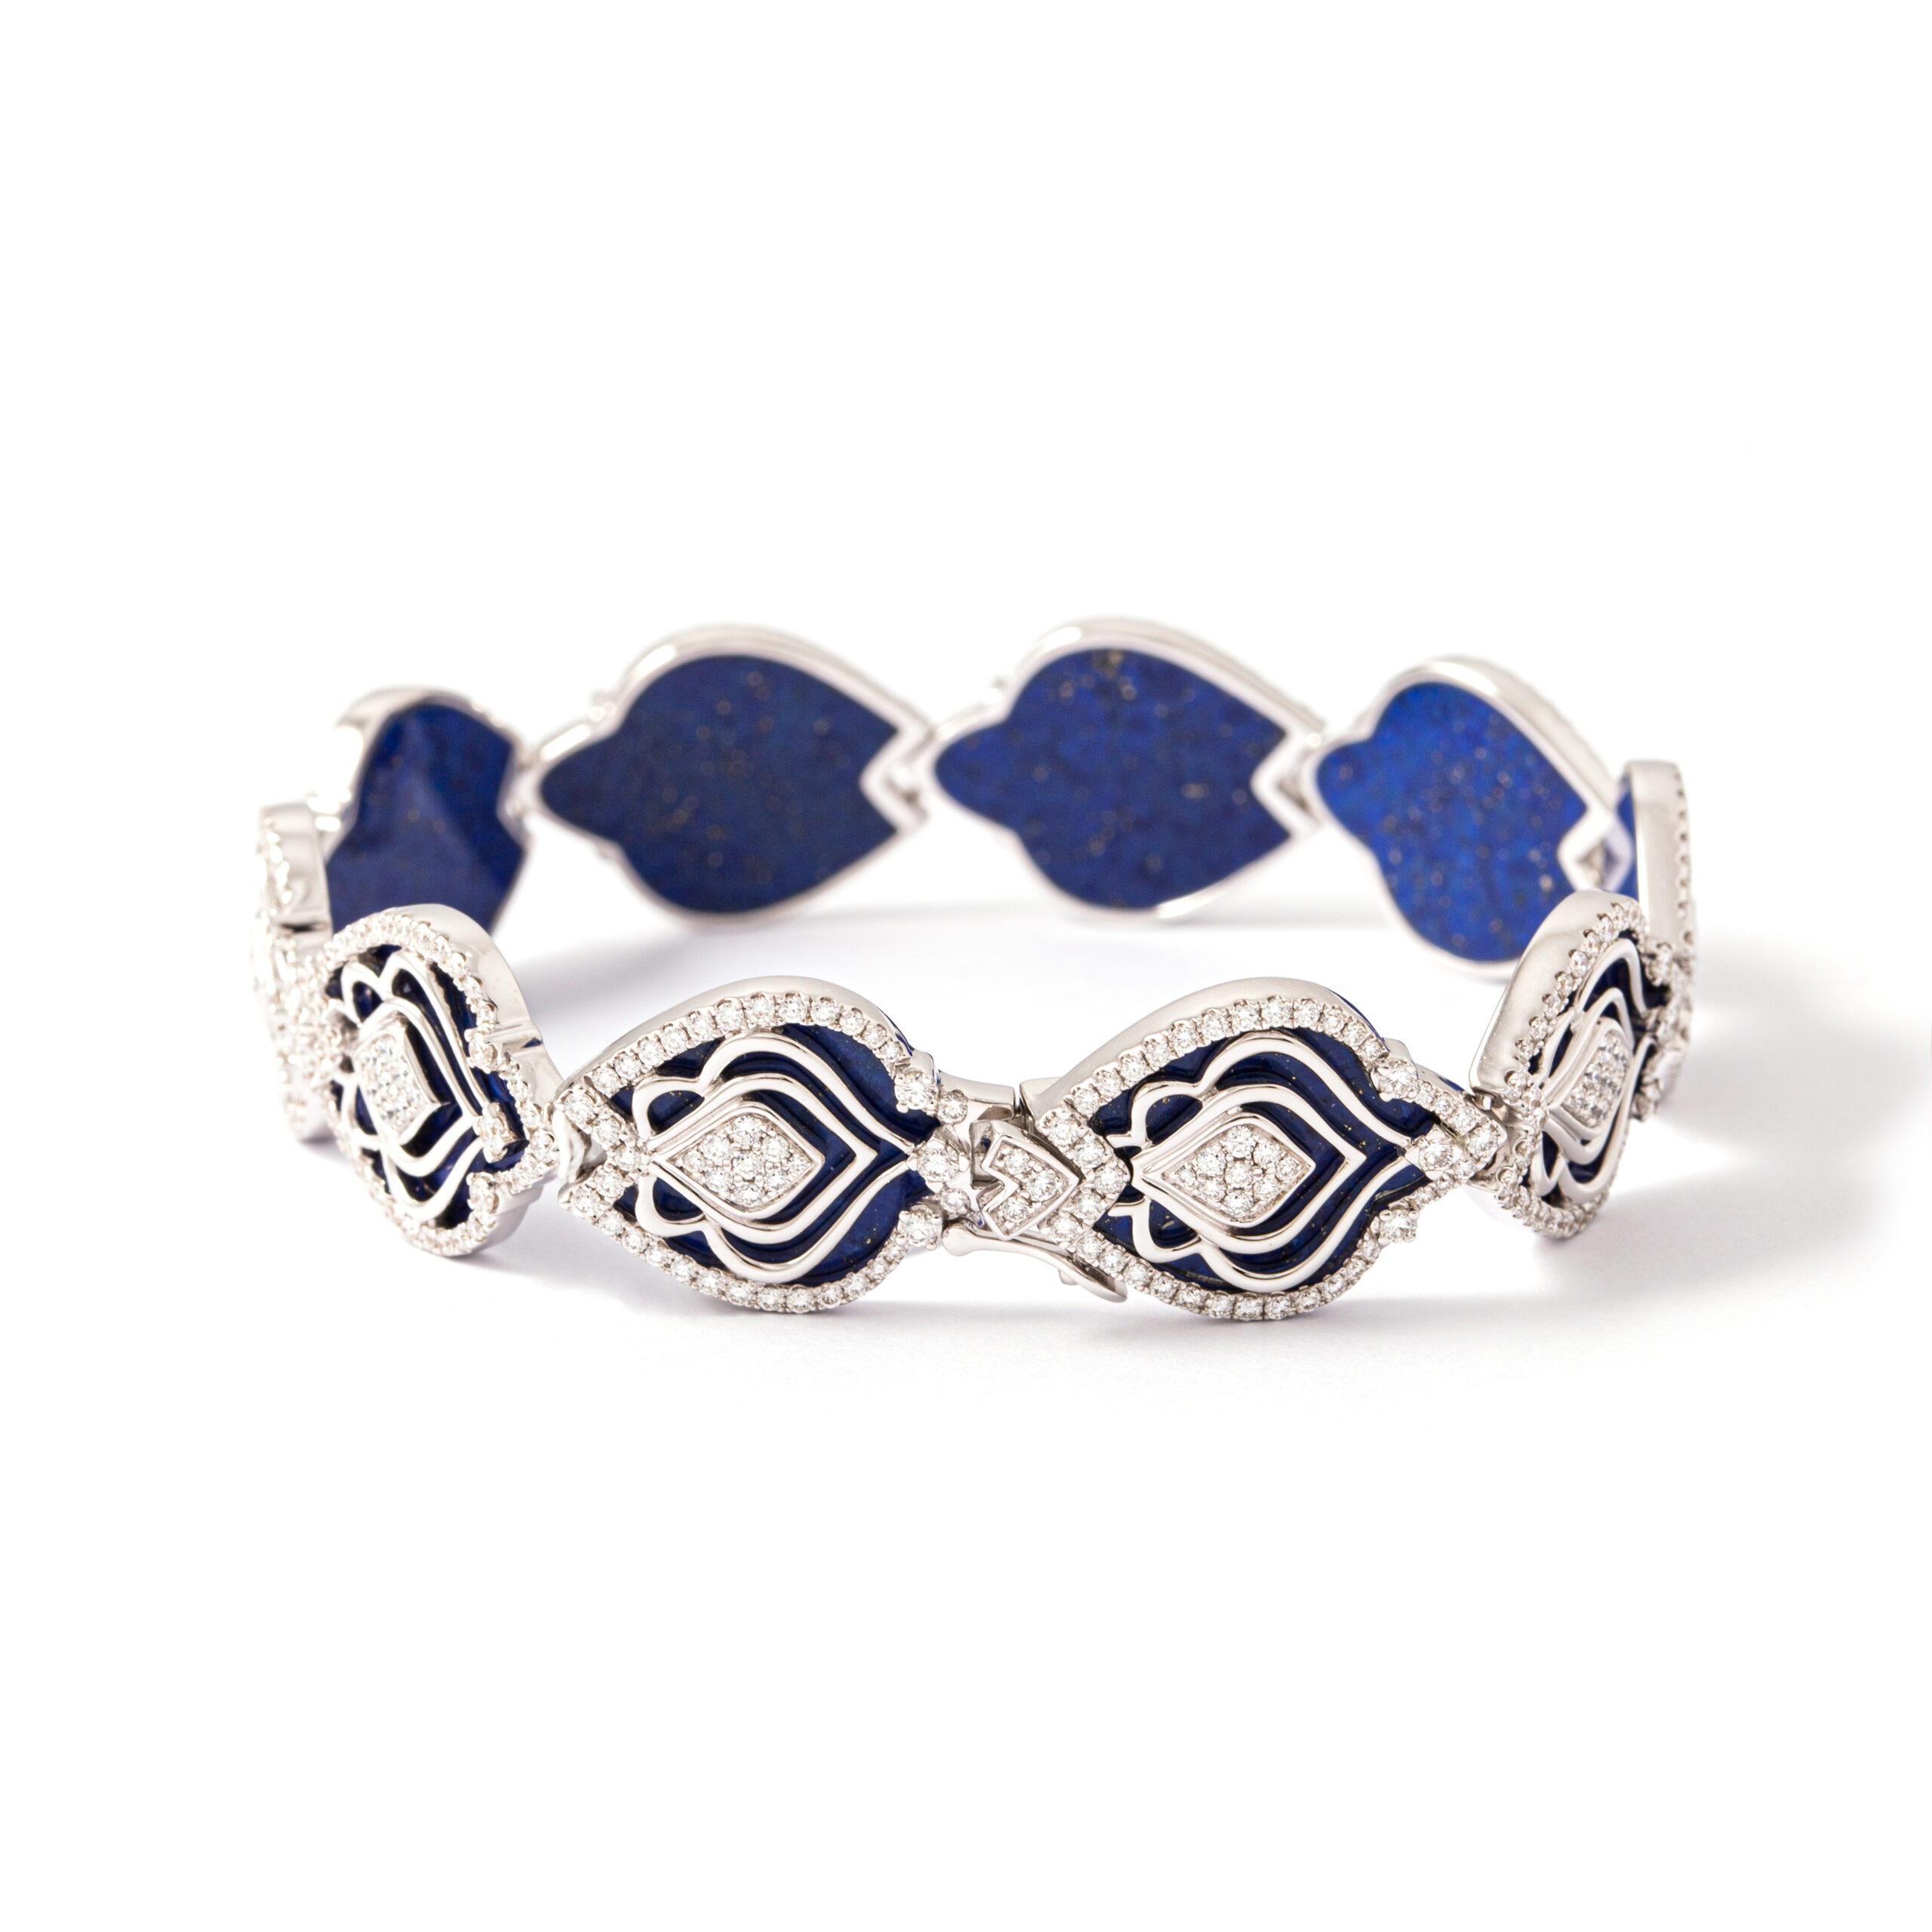 20l351_3-lapis-lazuli-diamonds-jewels-white-gold-bracelet